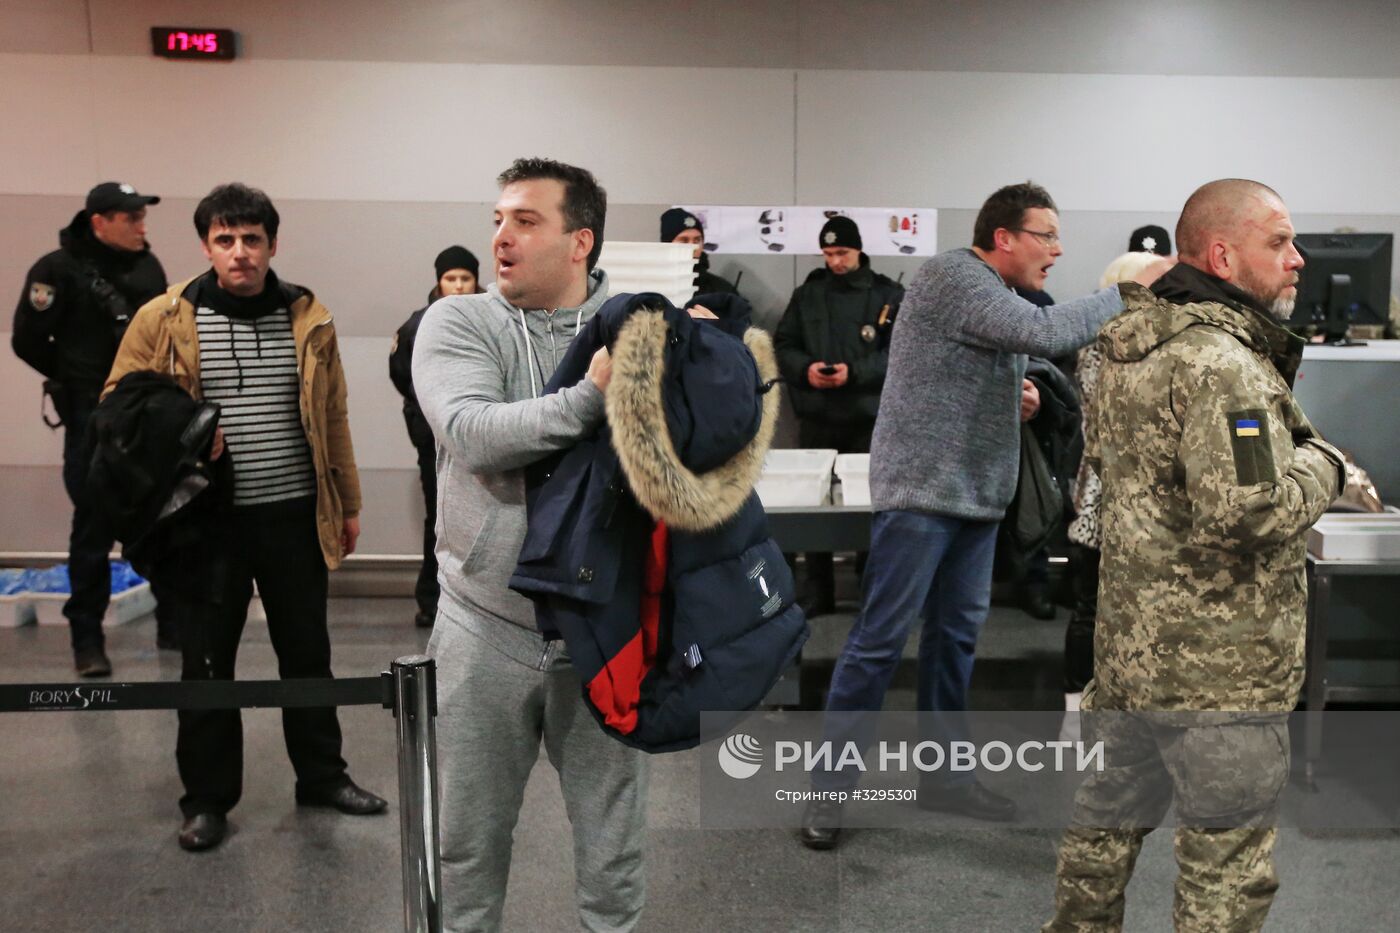 Акции на Украине против депортации М. Саакашвили из страны